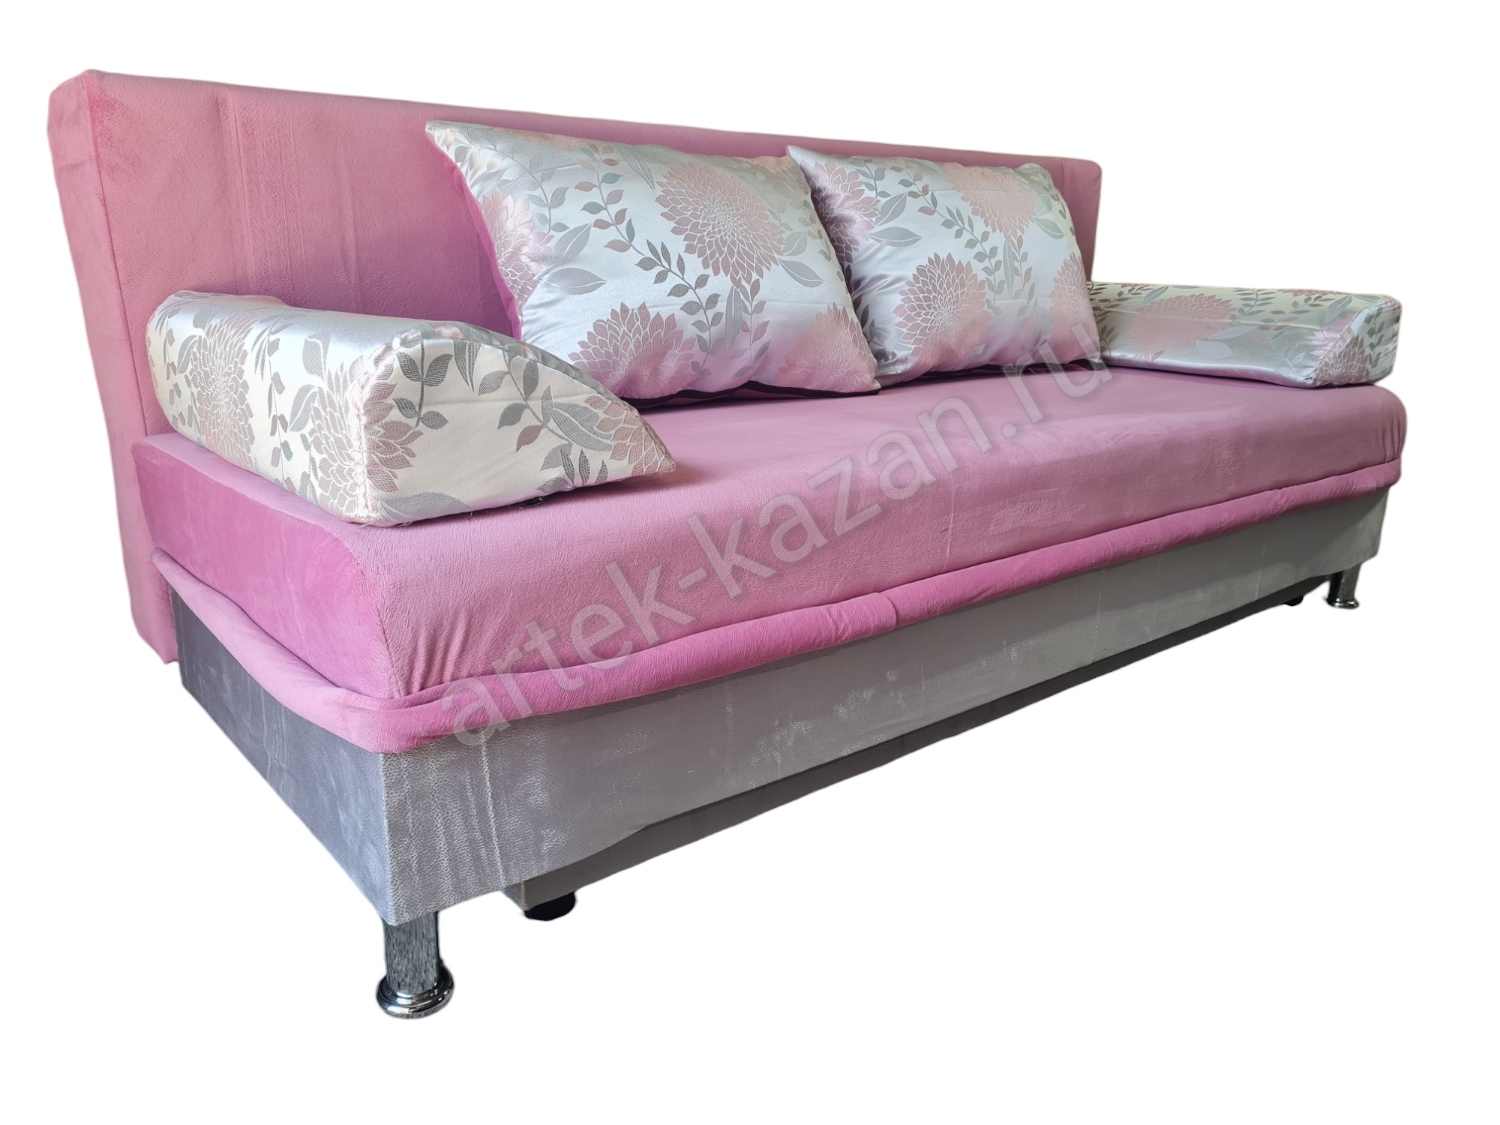 Диван еврокнижка -Эконом- флок амаро розовый, цена 10500руб. Купить недорогой диван по низкой цене от производителя можно у нас.